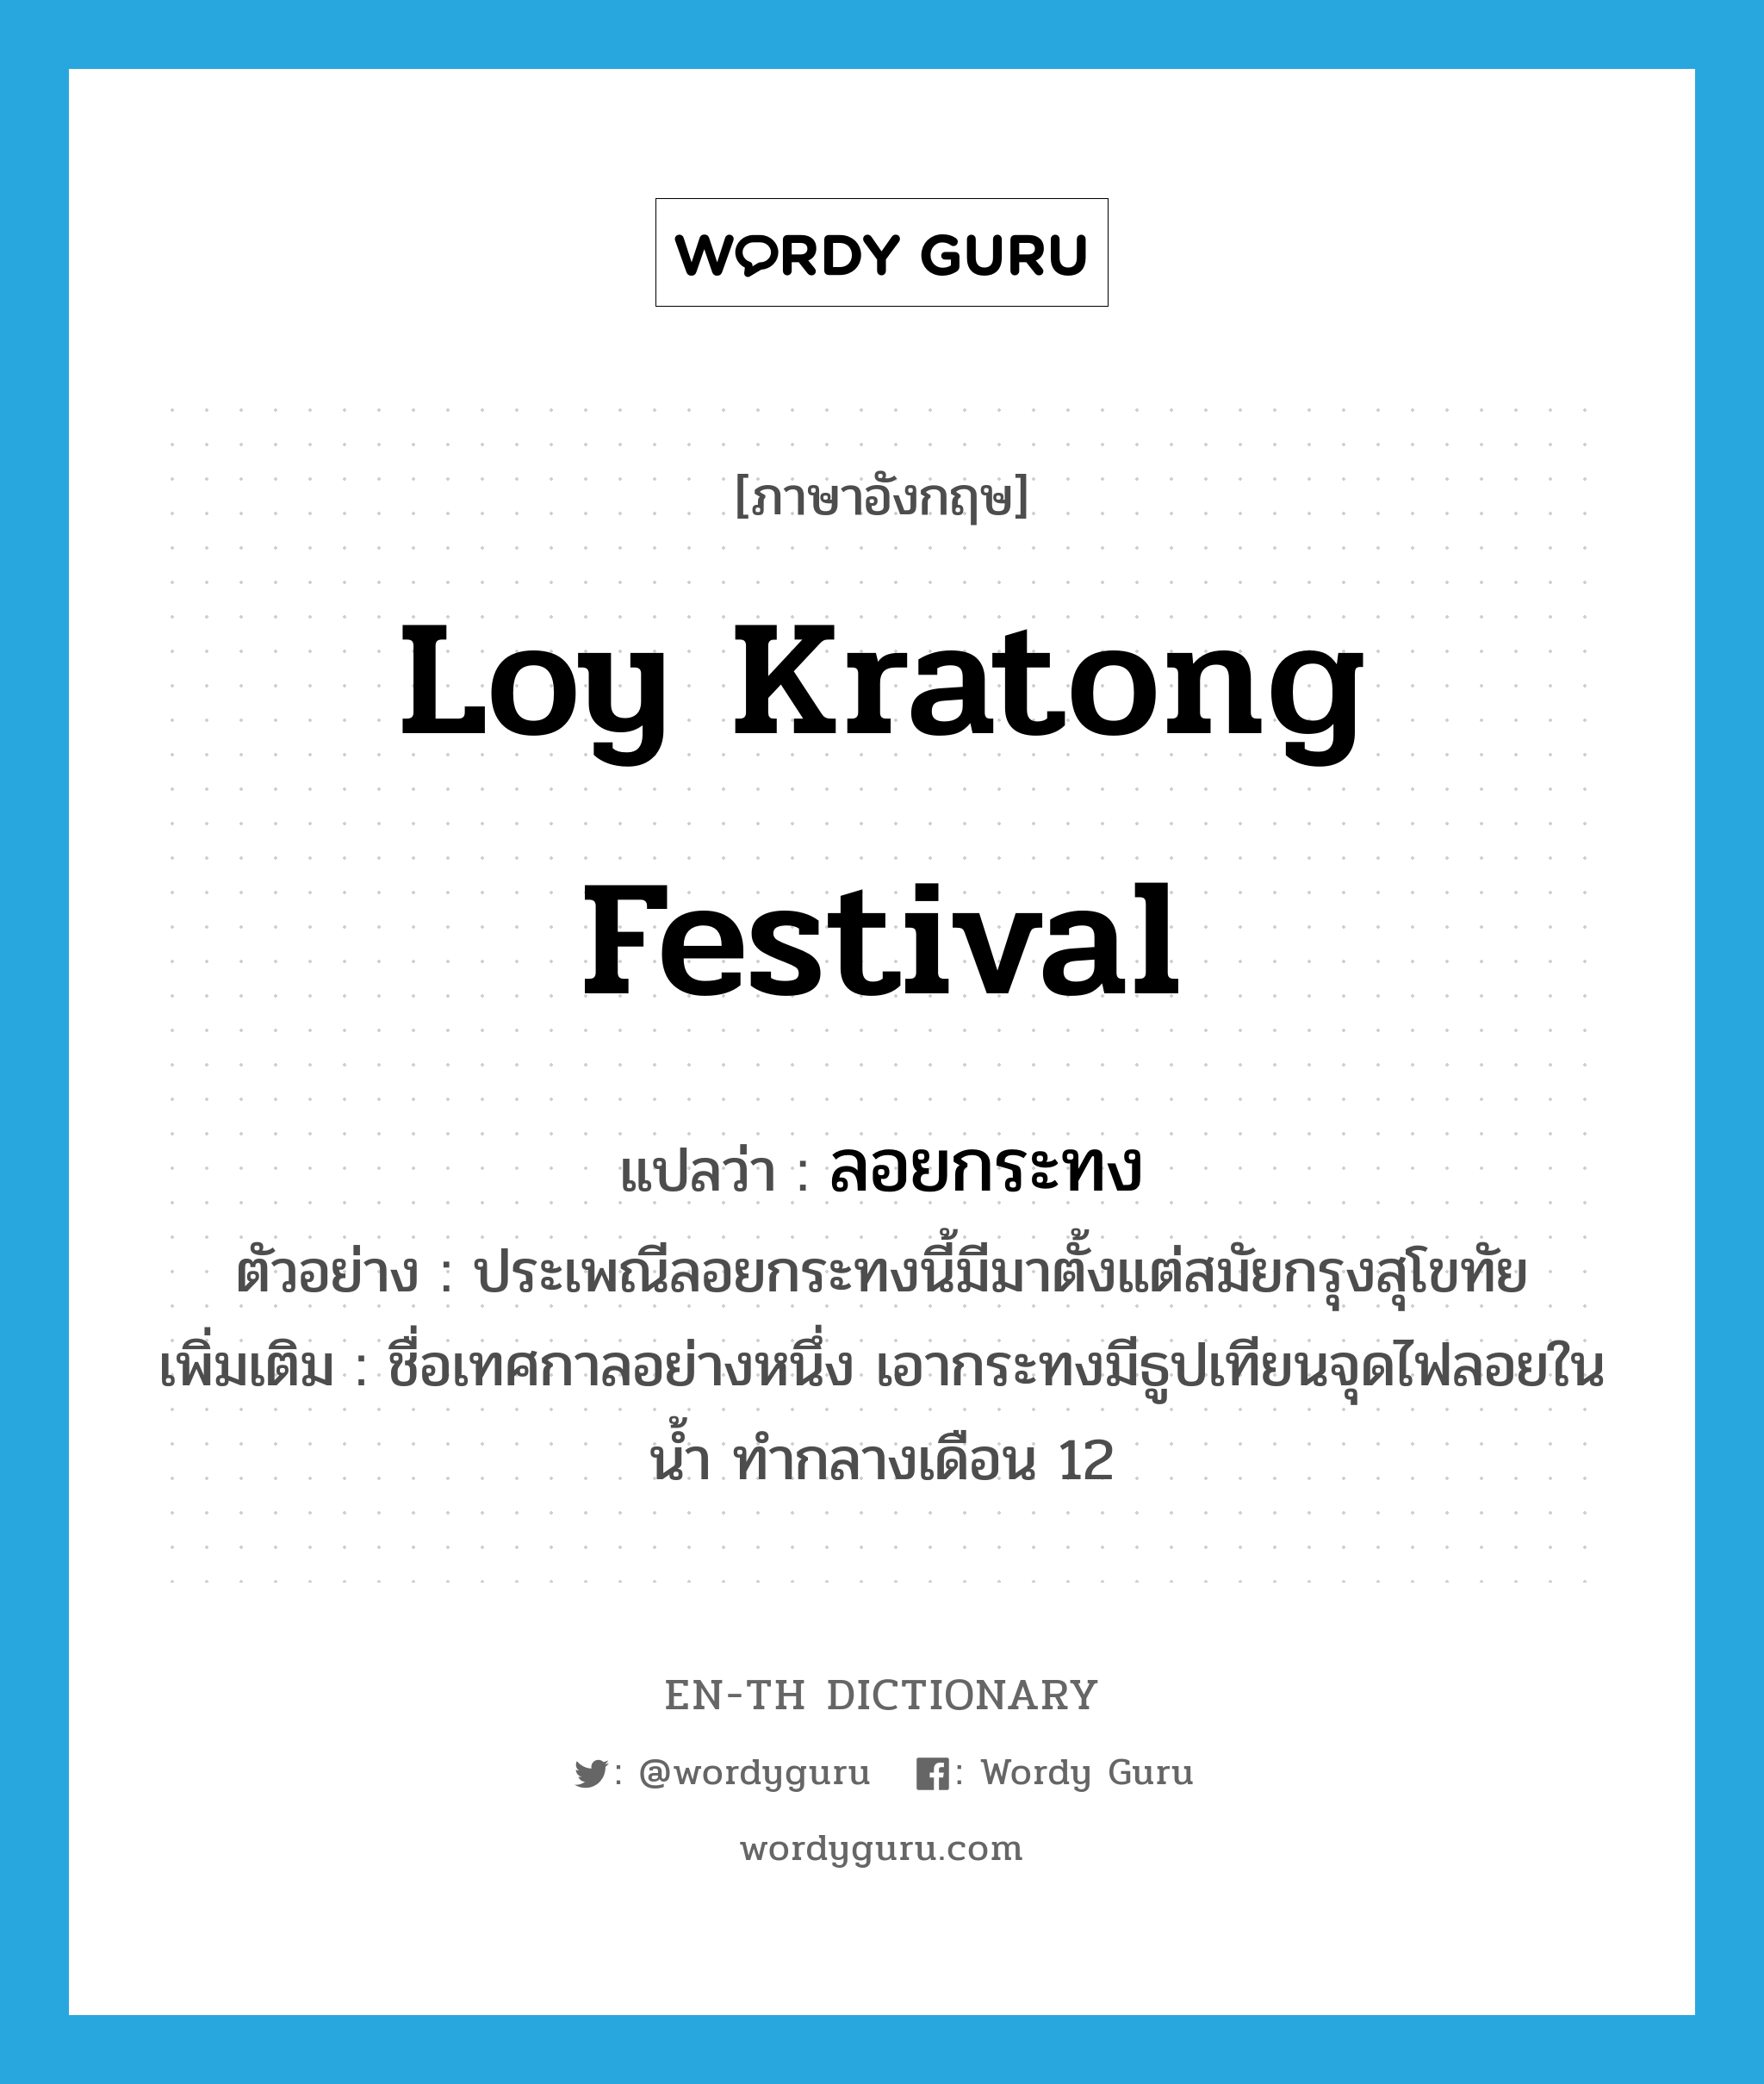 Loy Kratong Festival แปลว่า?, คำศัพท์ภาษาอังกฤษ Loy Kratong Festival แปลว่า ลอยกระทง ประเภท N ตัวอย่าง ประเพณีลอยกระทงนี้มีมาตั้งแต่สมัยกรุงสุโขทัย เพิ่มเติม ชื่อเทศกาลอย่างหนึ่ง เอากระทงมีธูปเทียนจุดไฟลอยในน้ำ ทำกลางเดือน 12 หมวด N